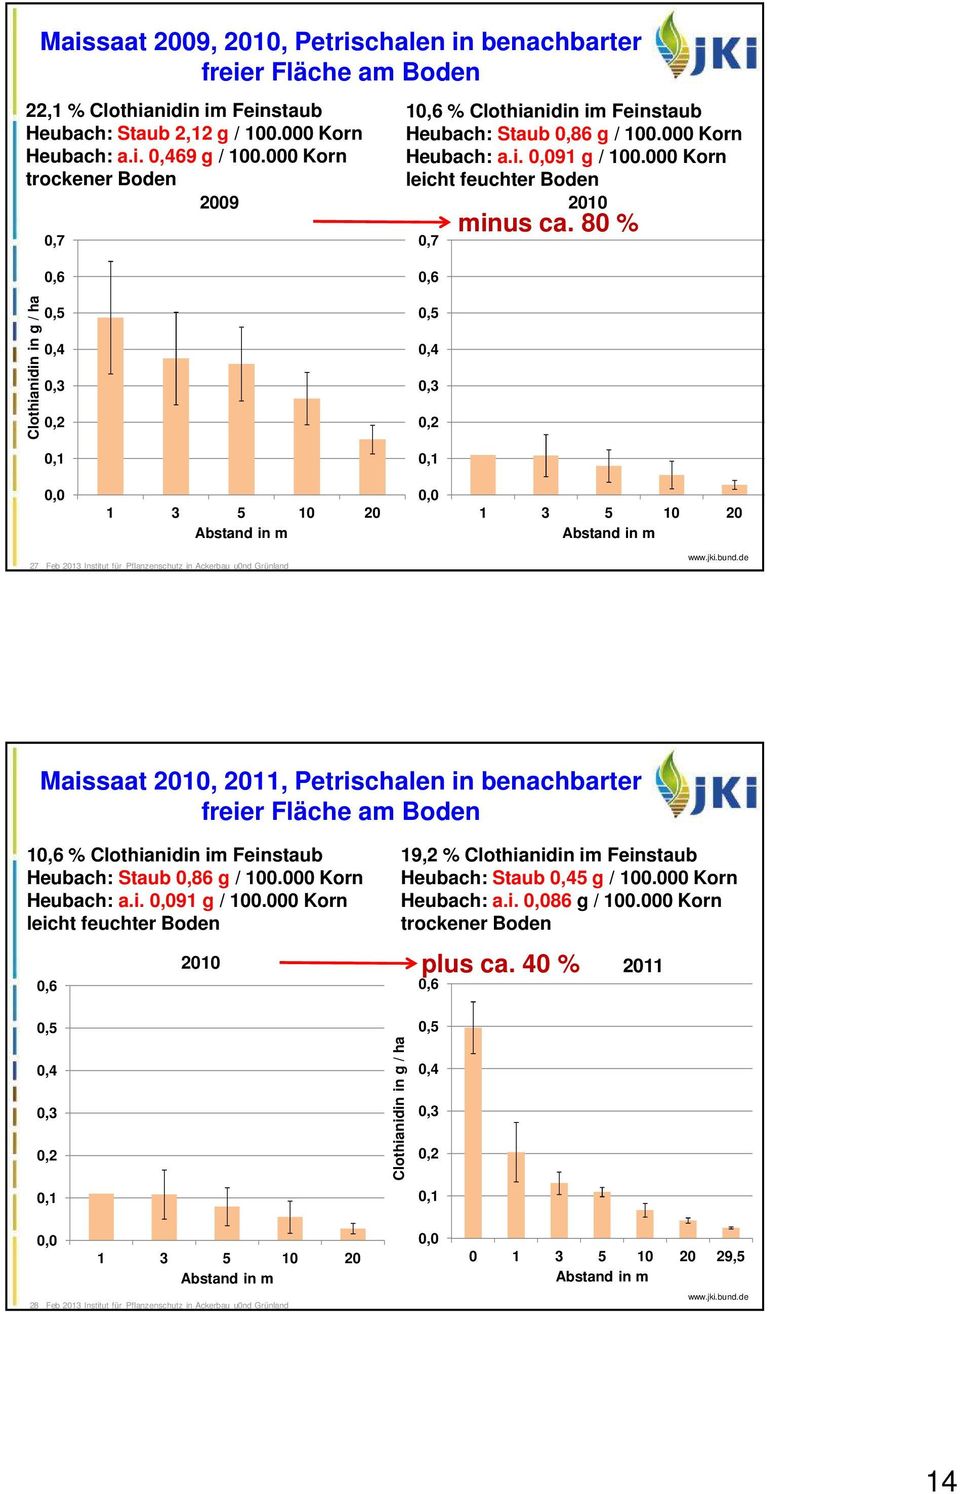 80 % Clothianidin in g / ha 0,6 0,5 0,4 0,3 0,2 0,1 0,6 0,5 0,4 0,3 0,2 0,1 0,0 1 3 5 10 20 Abstand in m 0,0 1 3 5 10 20 Abstand in m 27 Feb 2013 Institut für Pflanzenschutz in Ackerbau u0nd Grünland